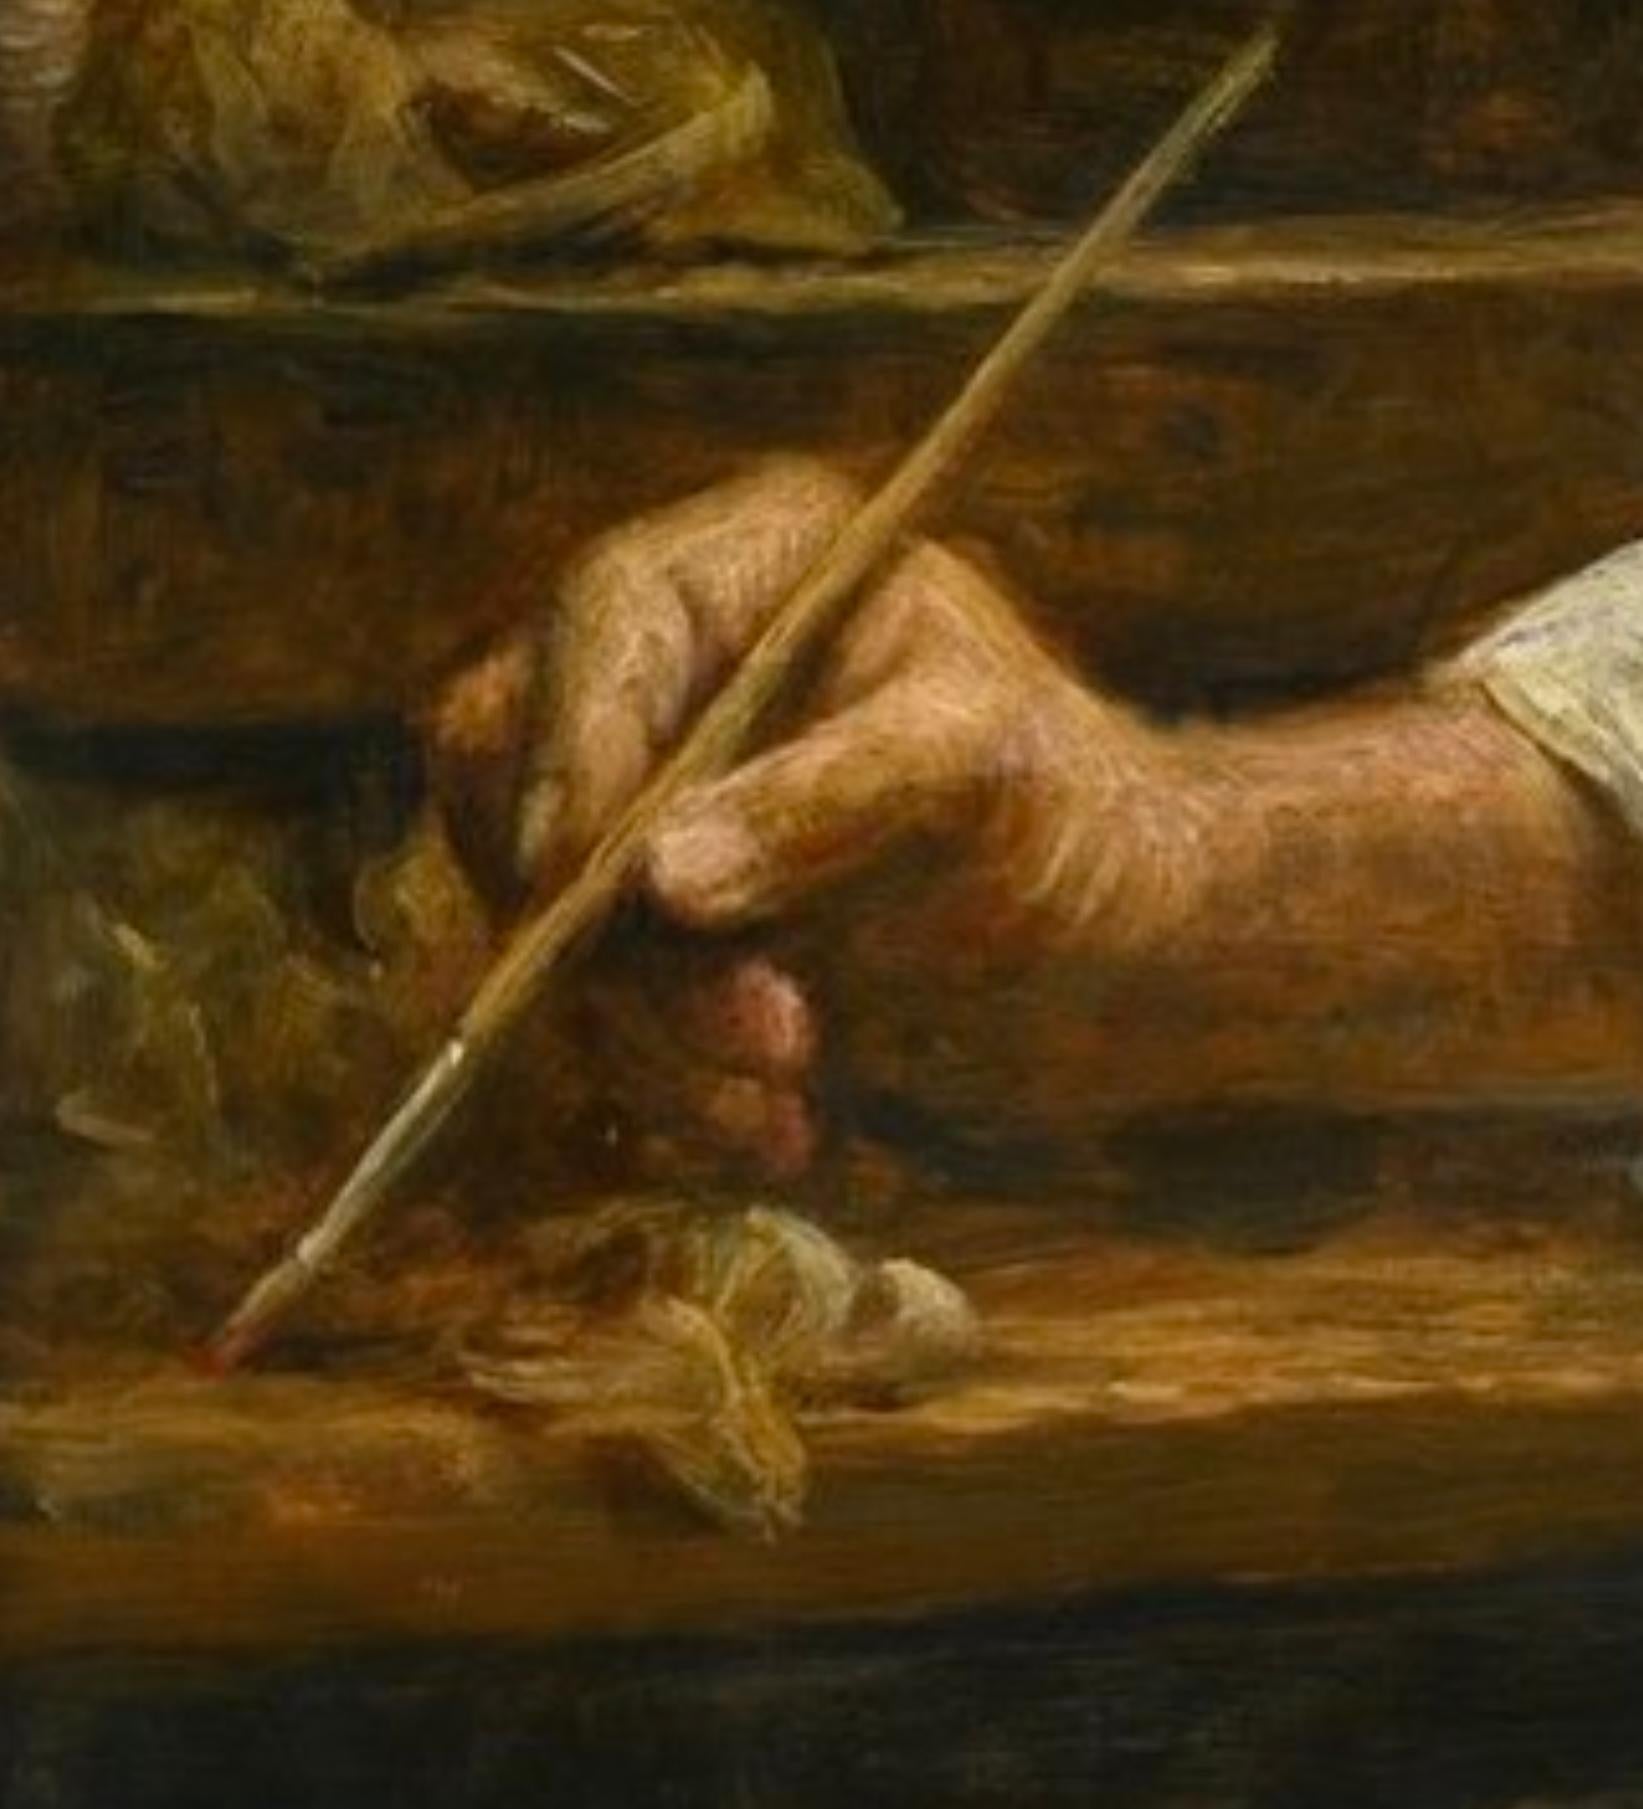 Self-Portrait au chevalet par Cornelis le Mair
115 x 105 cm (cadre inclus) sans cadre 90 x 80 cm
huile sur panneau de bois

En 2024, cet artiste remarquable atteindra l'âge de 80 ans. Il continue à peindre tous les jours, et à peindre dans son style